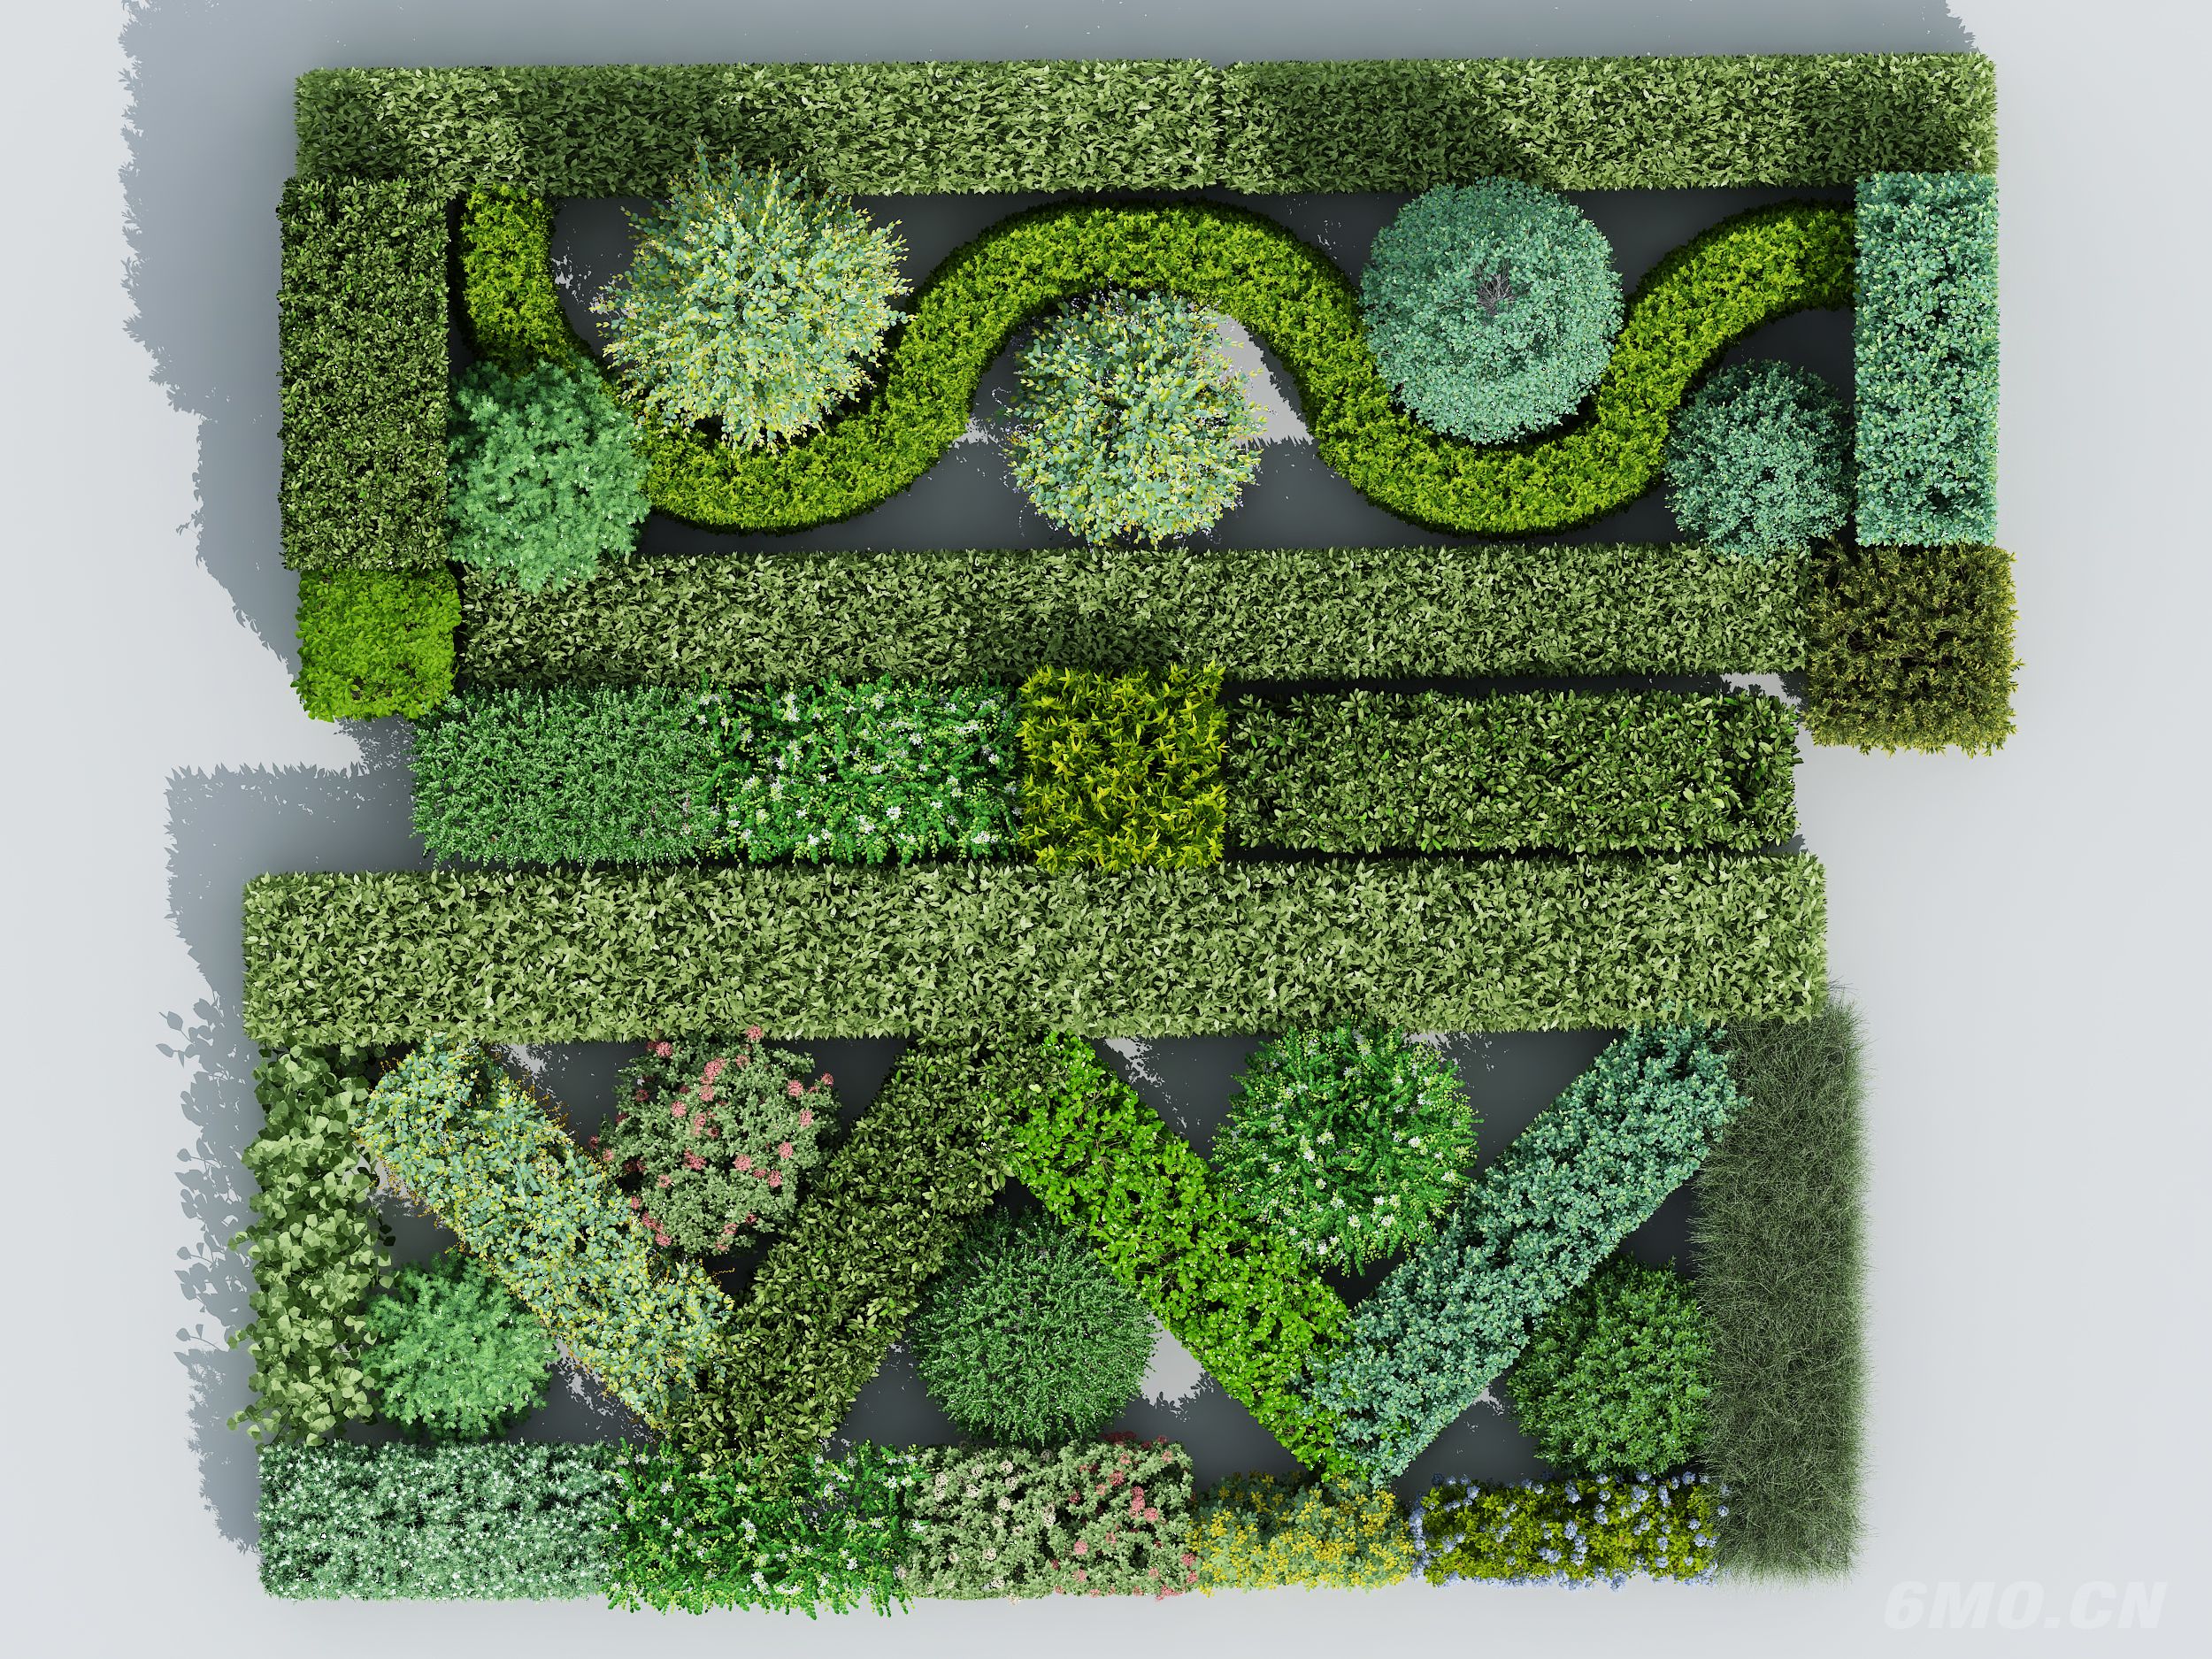  绿篱 方形灌木 方形树 方形绿篱 绿化带 法式绿植